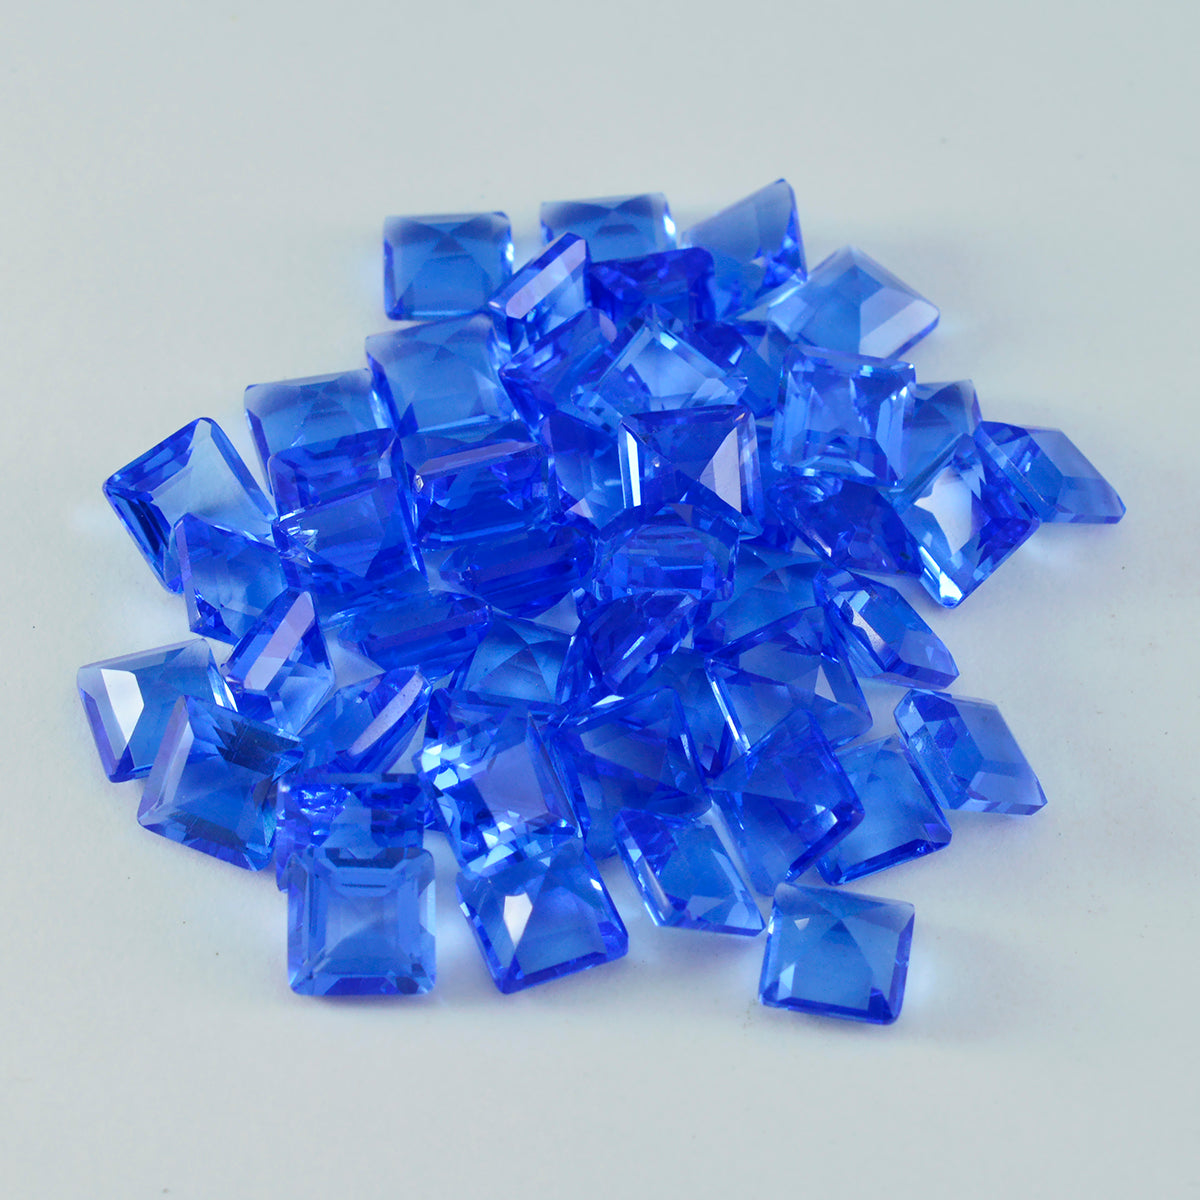 riyogems 1 шт. синий сапфир cz ограненный 6x6 мм квадратной формы драгоценный камень хорошего качества